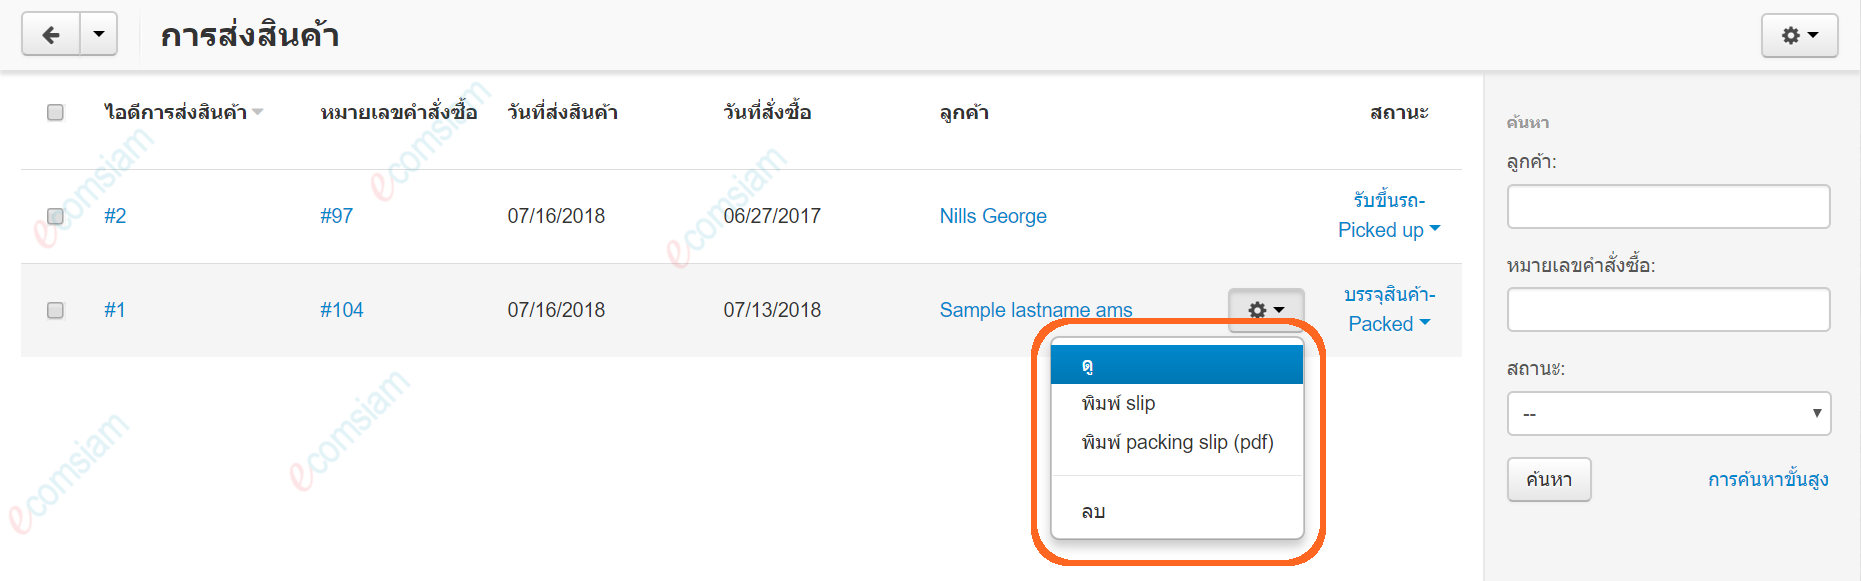 เว็บไซต์สำเร็จรูปไทย - คู่มือร้านออนไลน์ - สั่งซื้อ - การจัดส่ง shipments